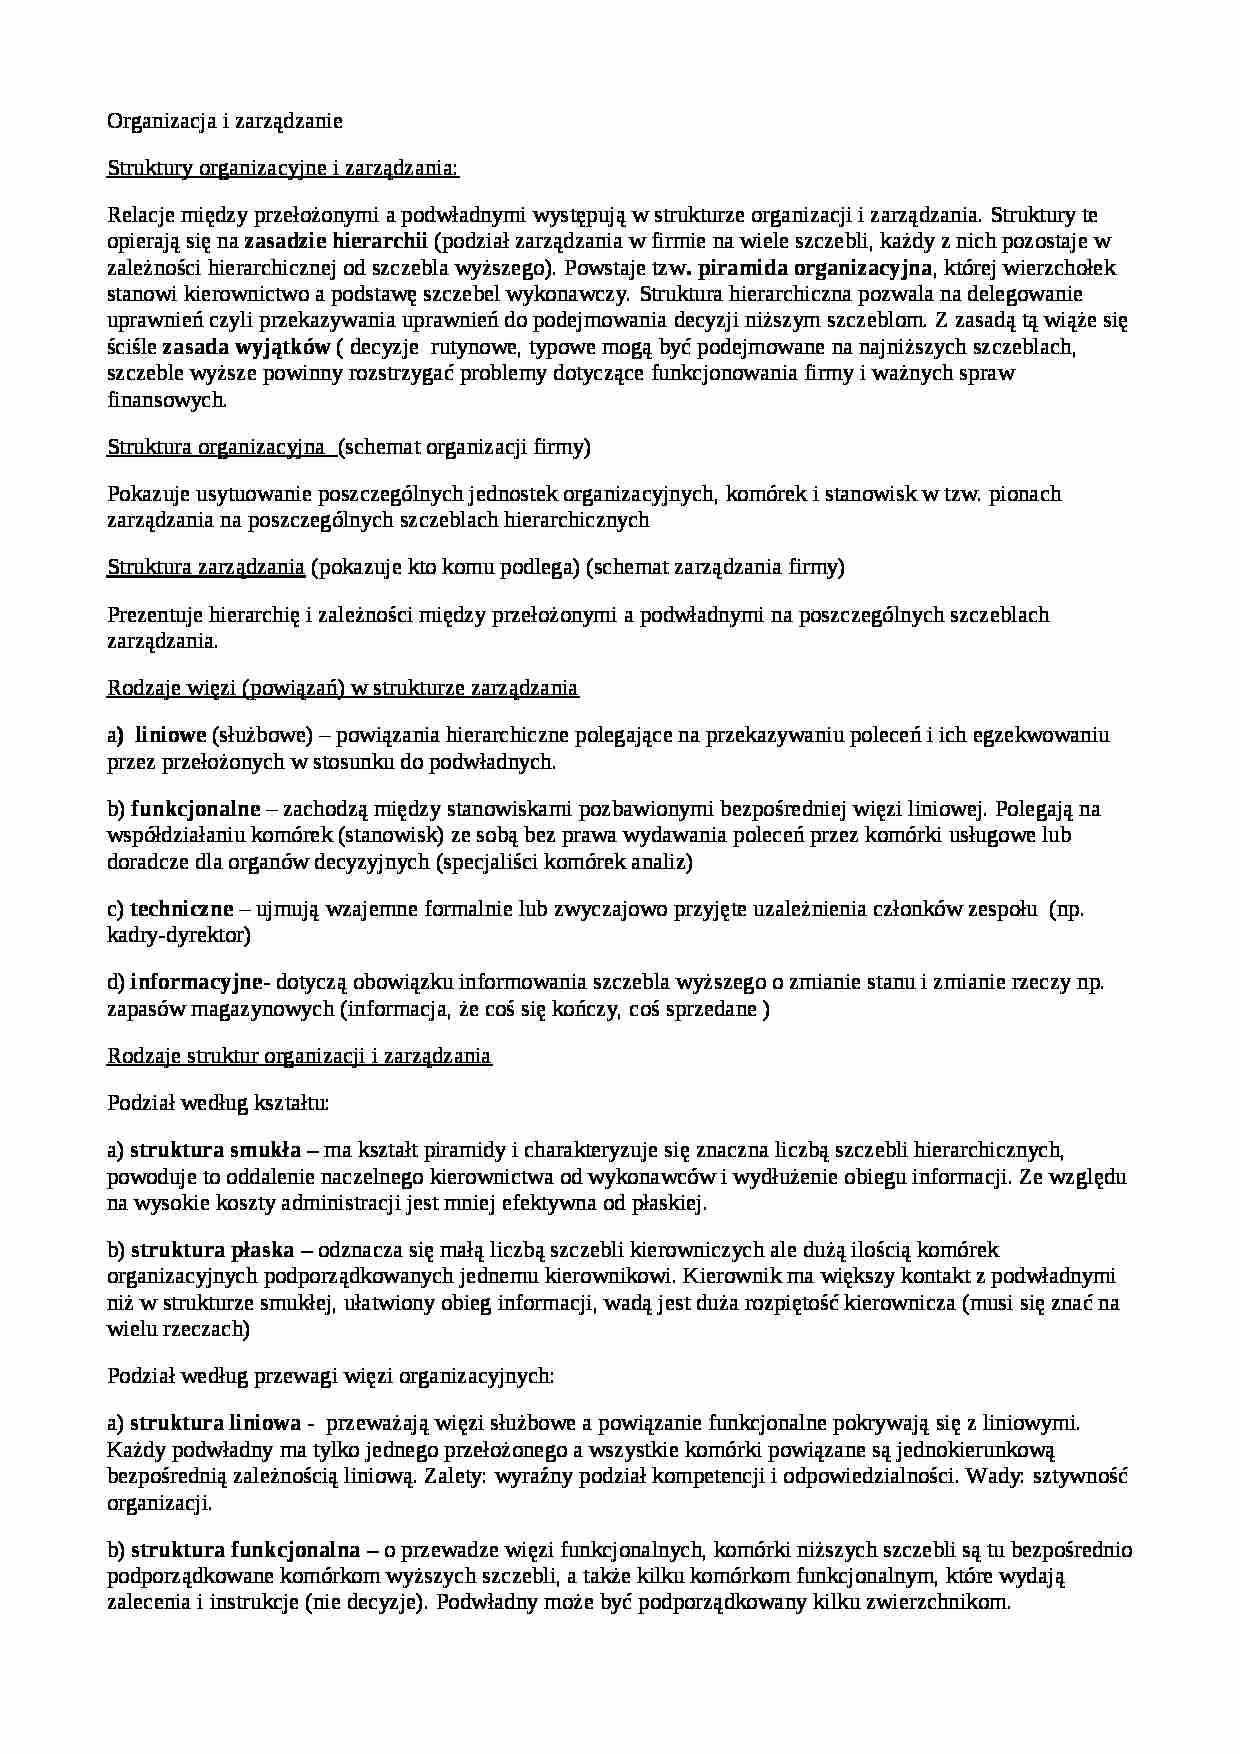  organizacja i zarządzanie - wykłady - strona 1